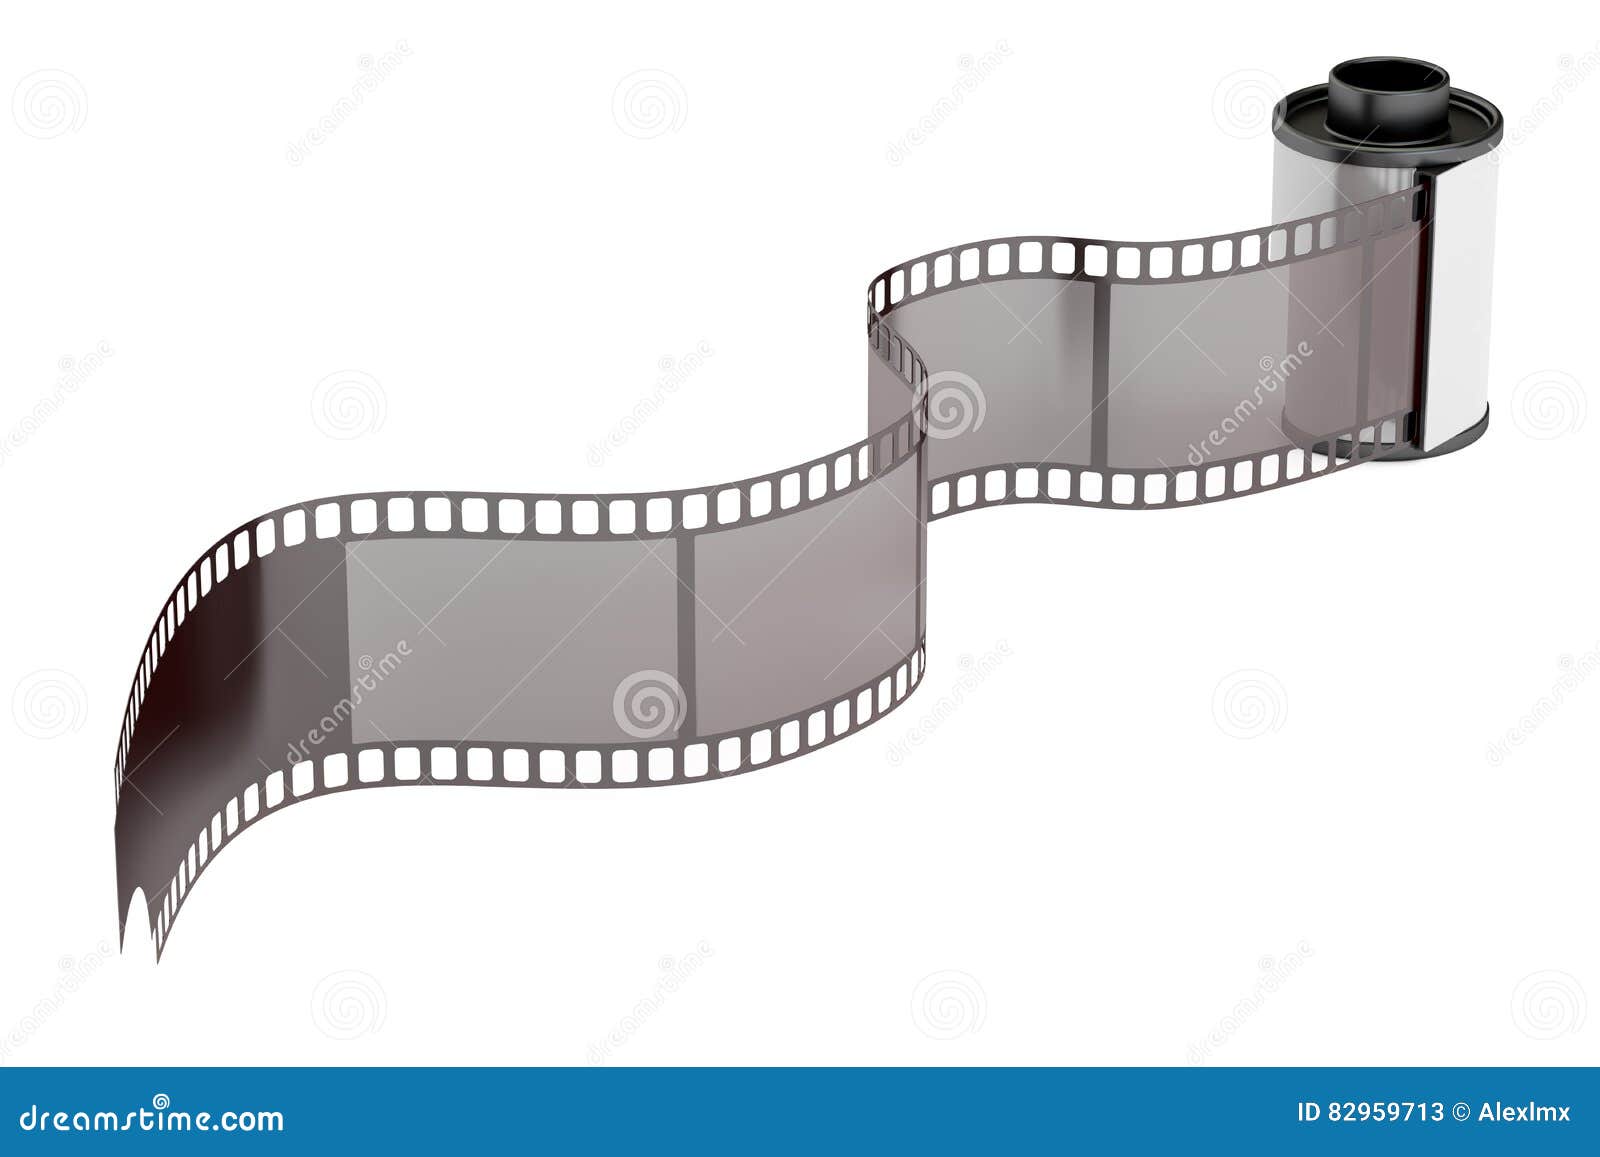 Camera Film Roll 35mm, 3D Rendering Stock Illustration